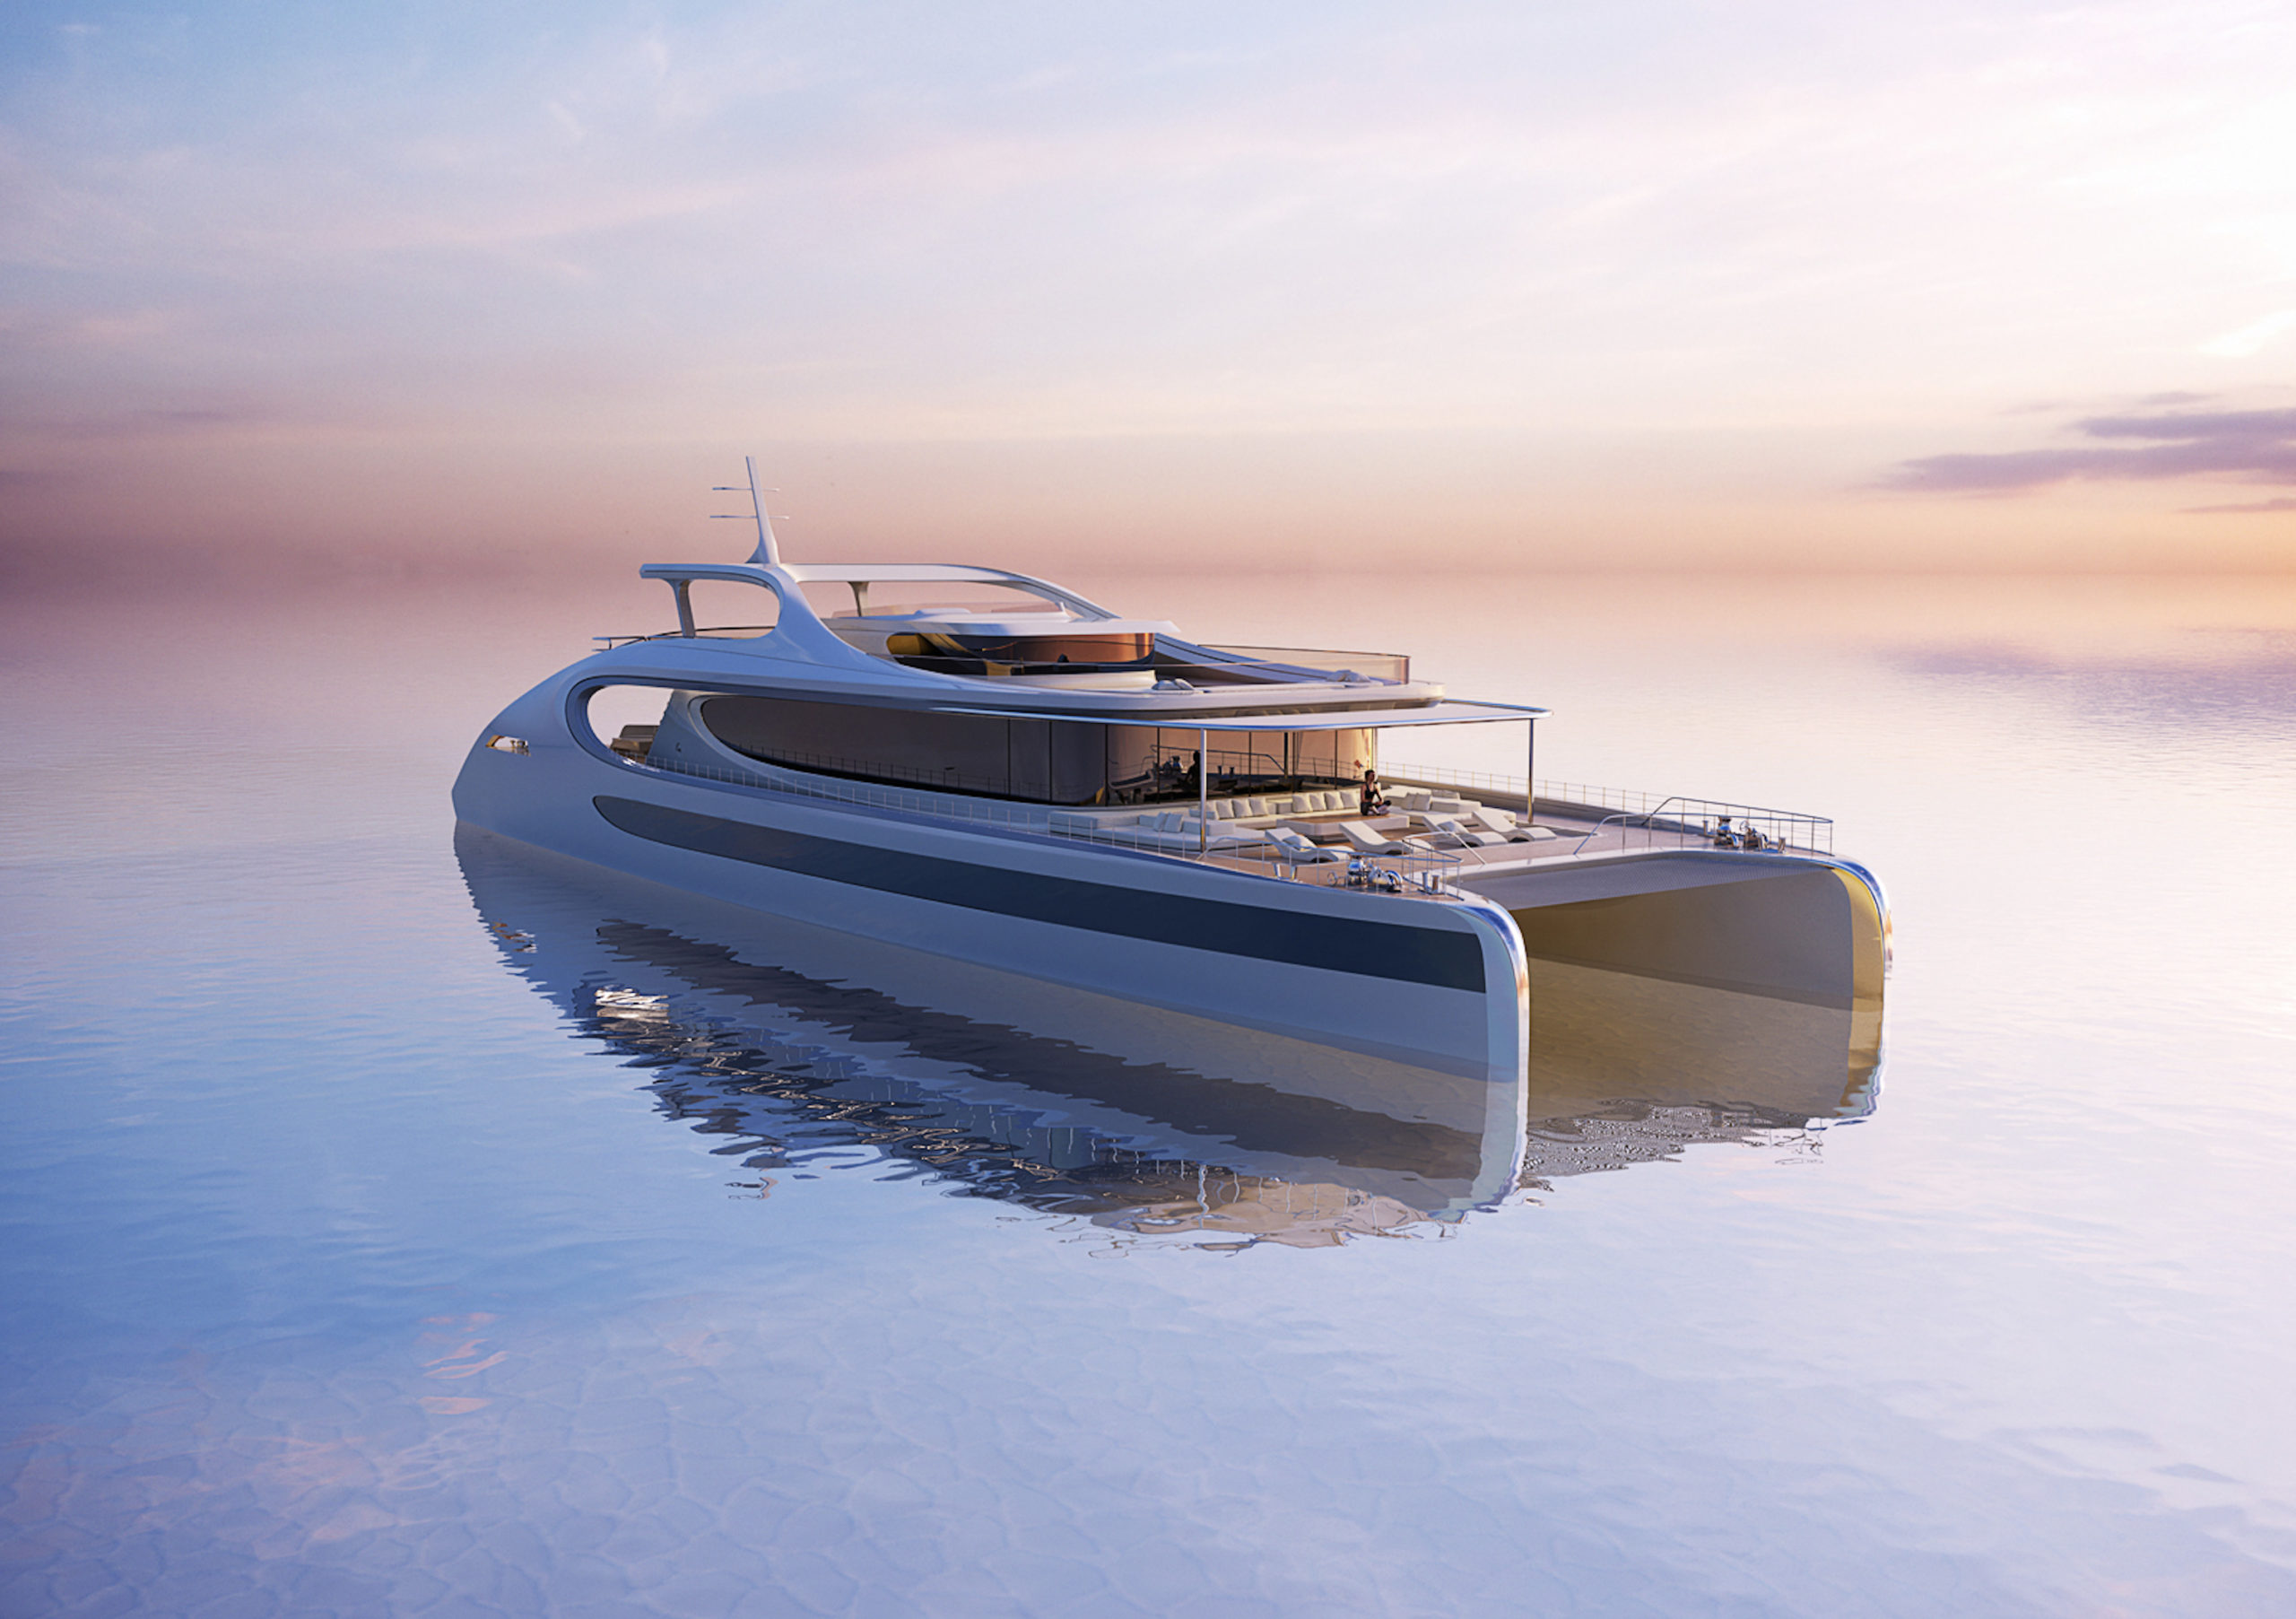 futuristic catamaran design